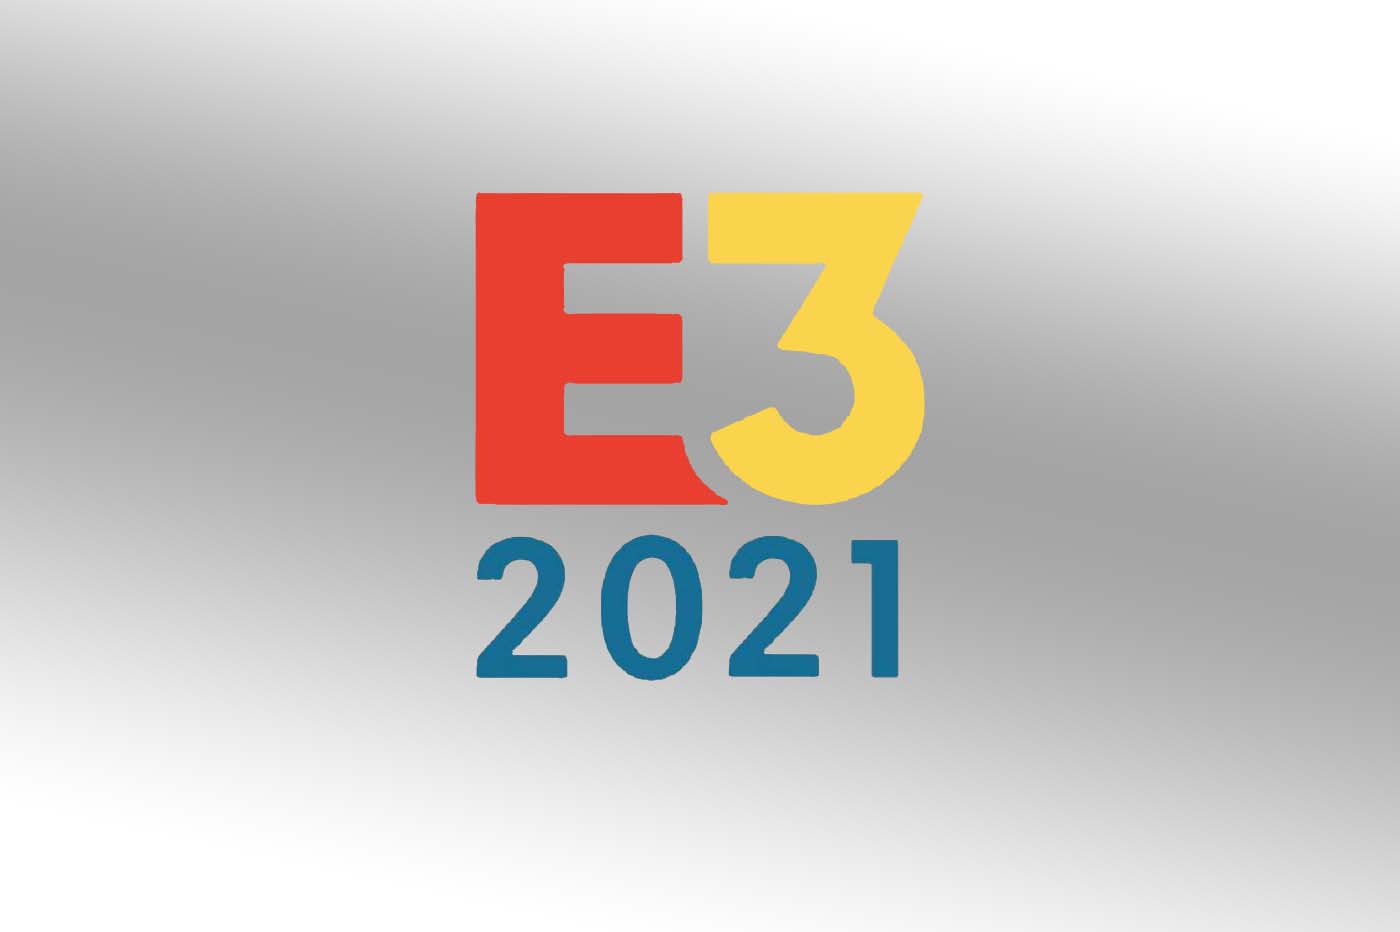 L’événement en direct de l’E3 2021 annulé selon la ville de LA